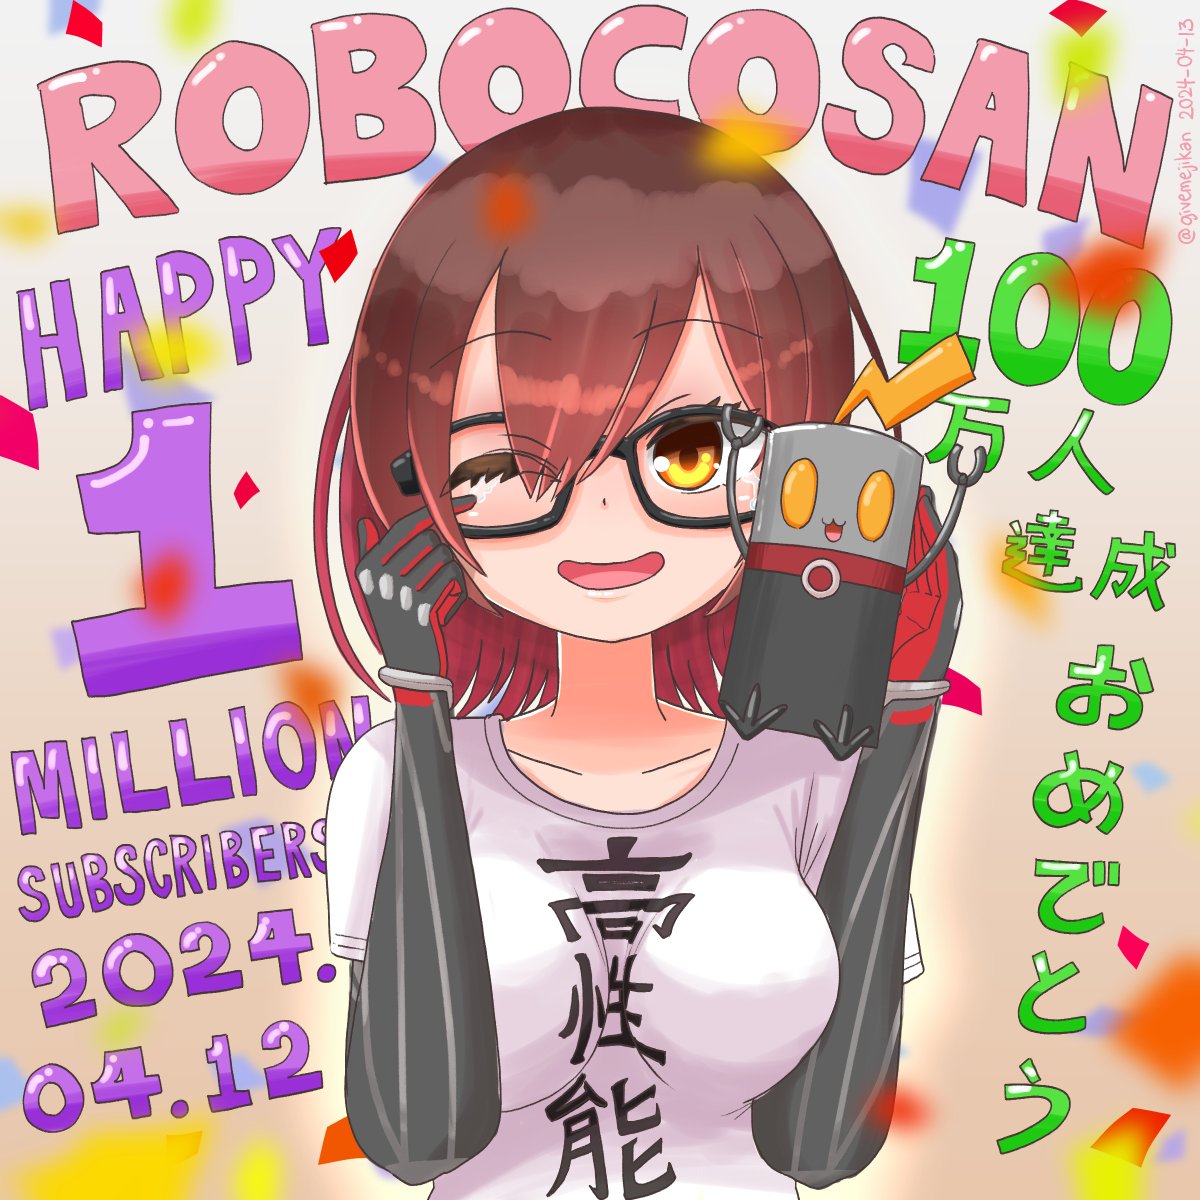 おめでとうございます #ロボ子100万人 #ロボ子Art